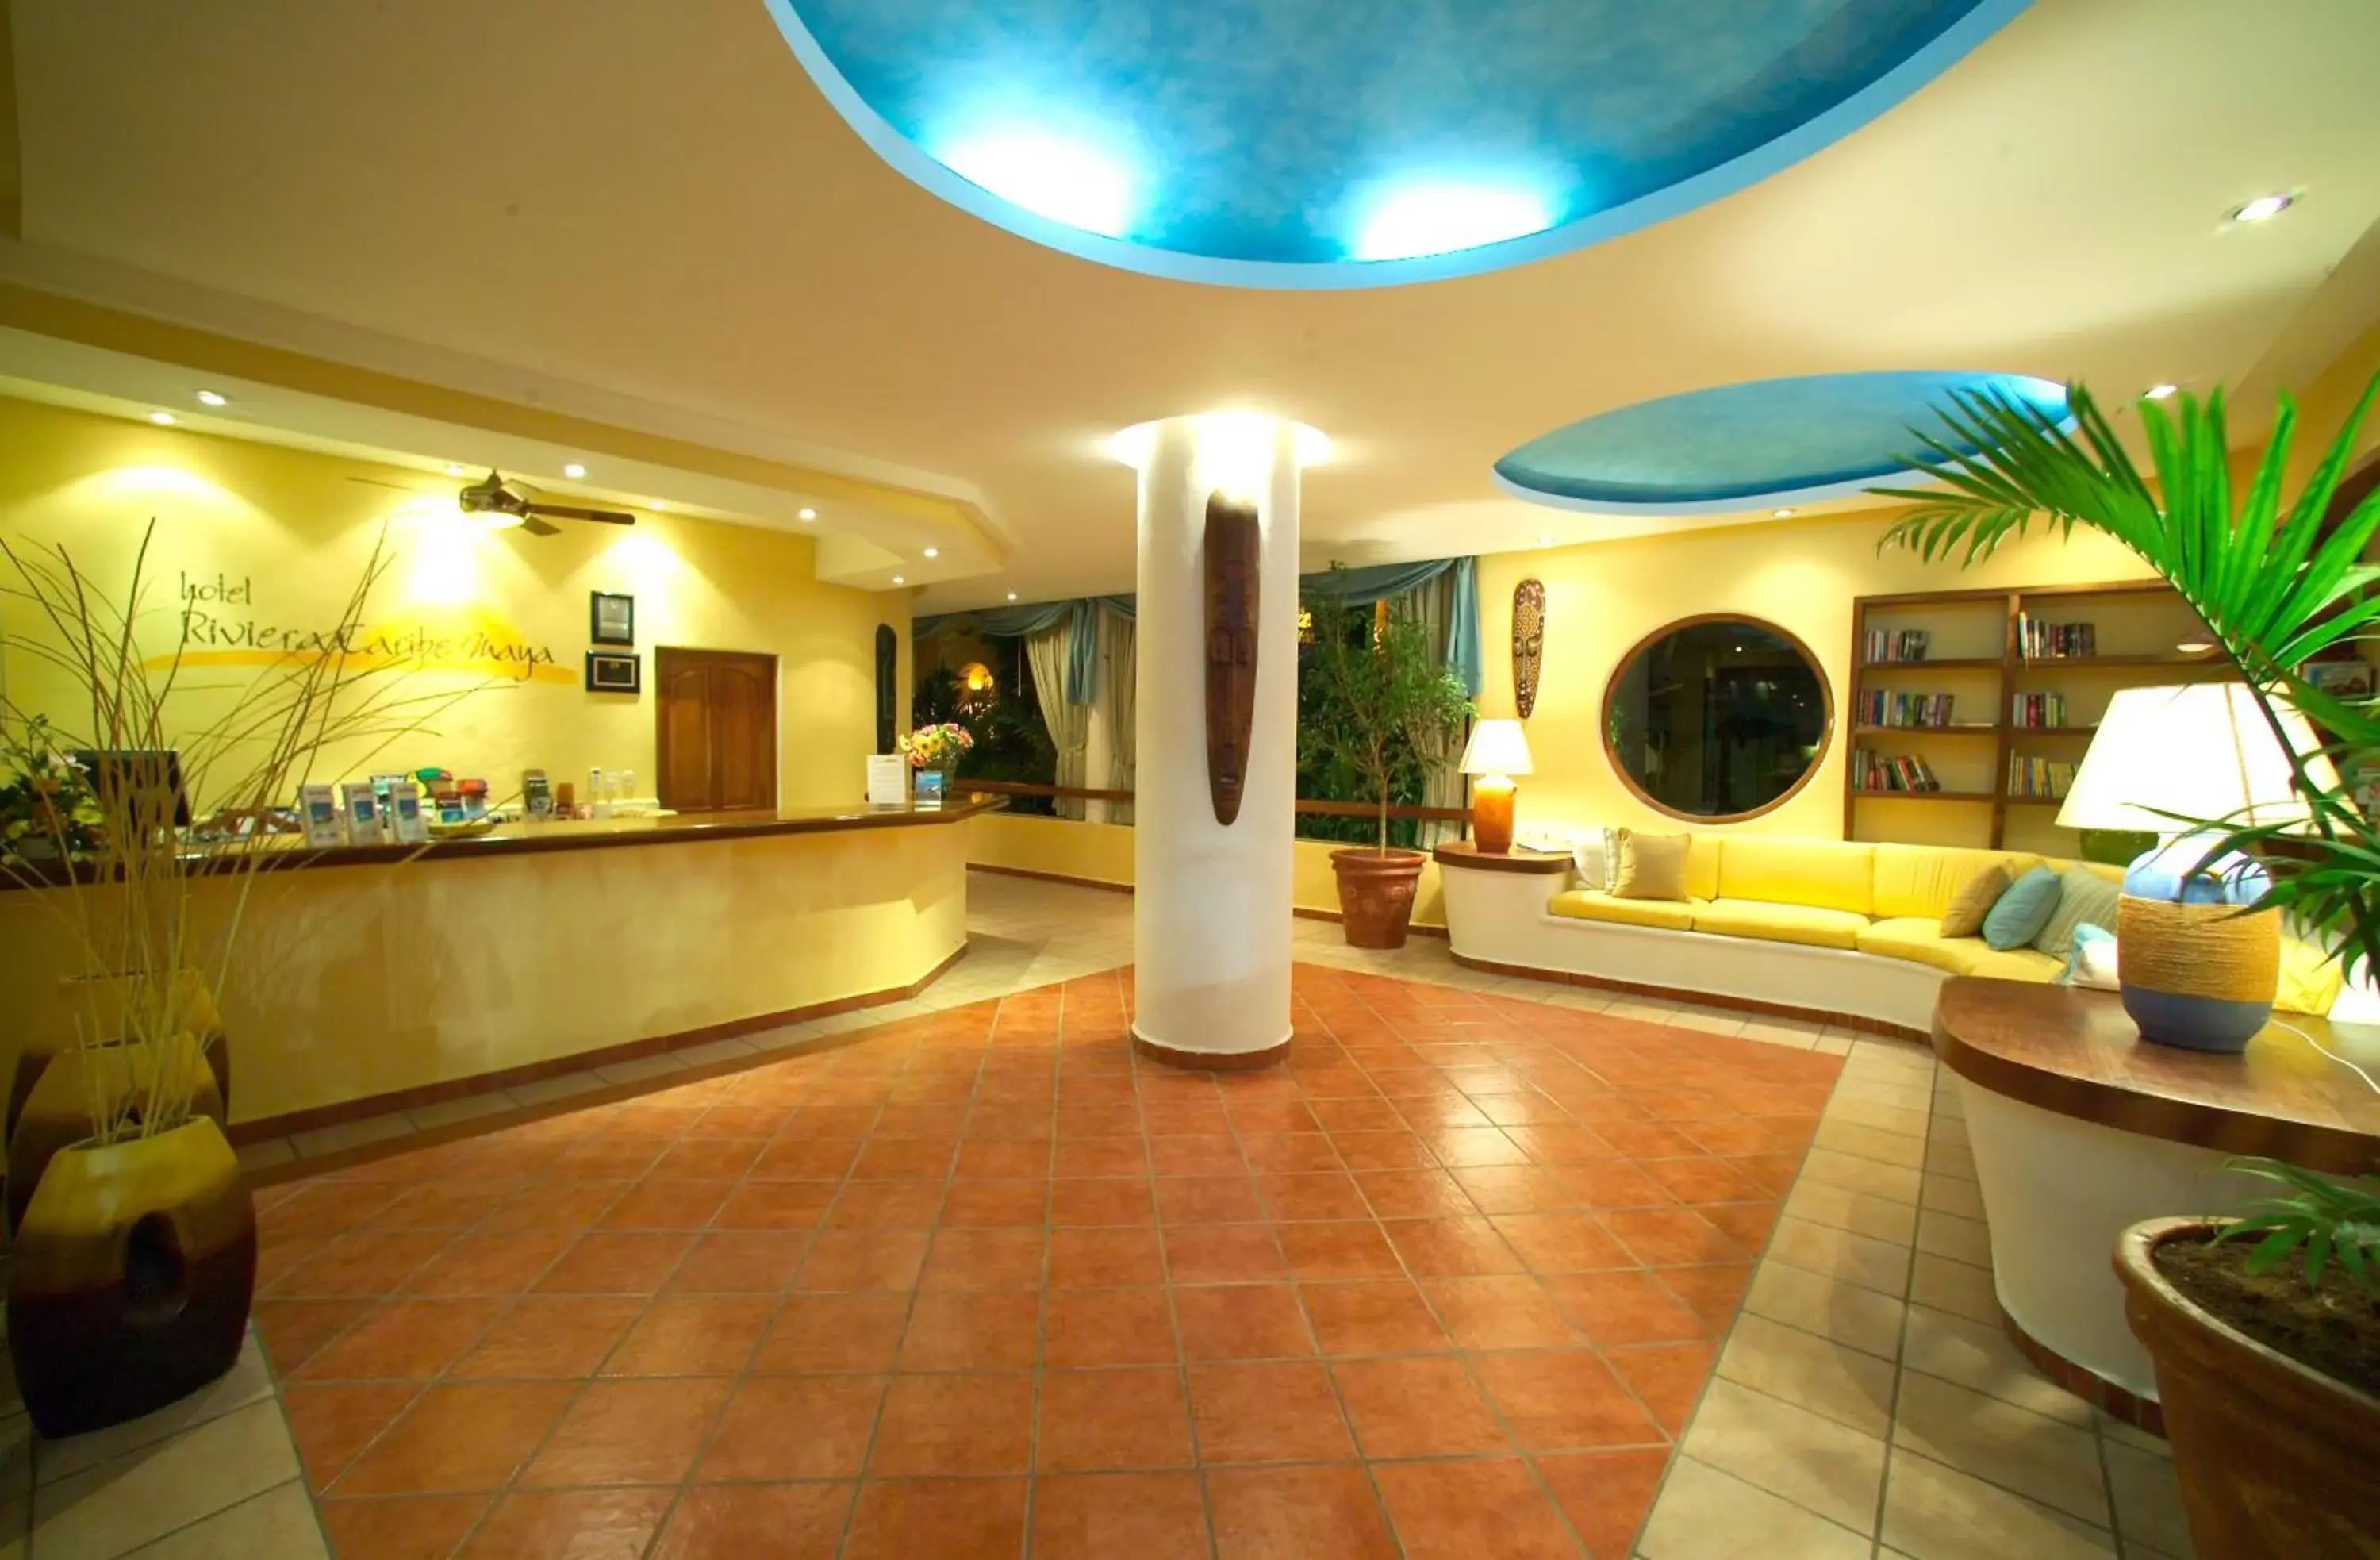 Lobby or reception, Lobby/Reception in Hotel Riviera Caribe Maya